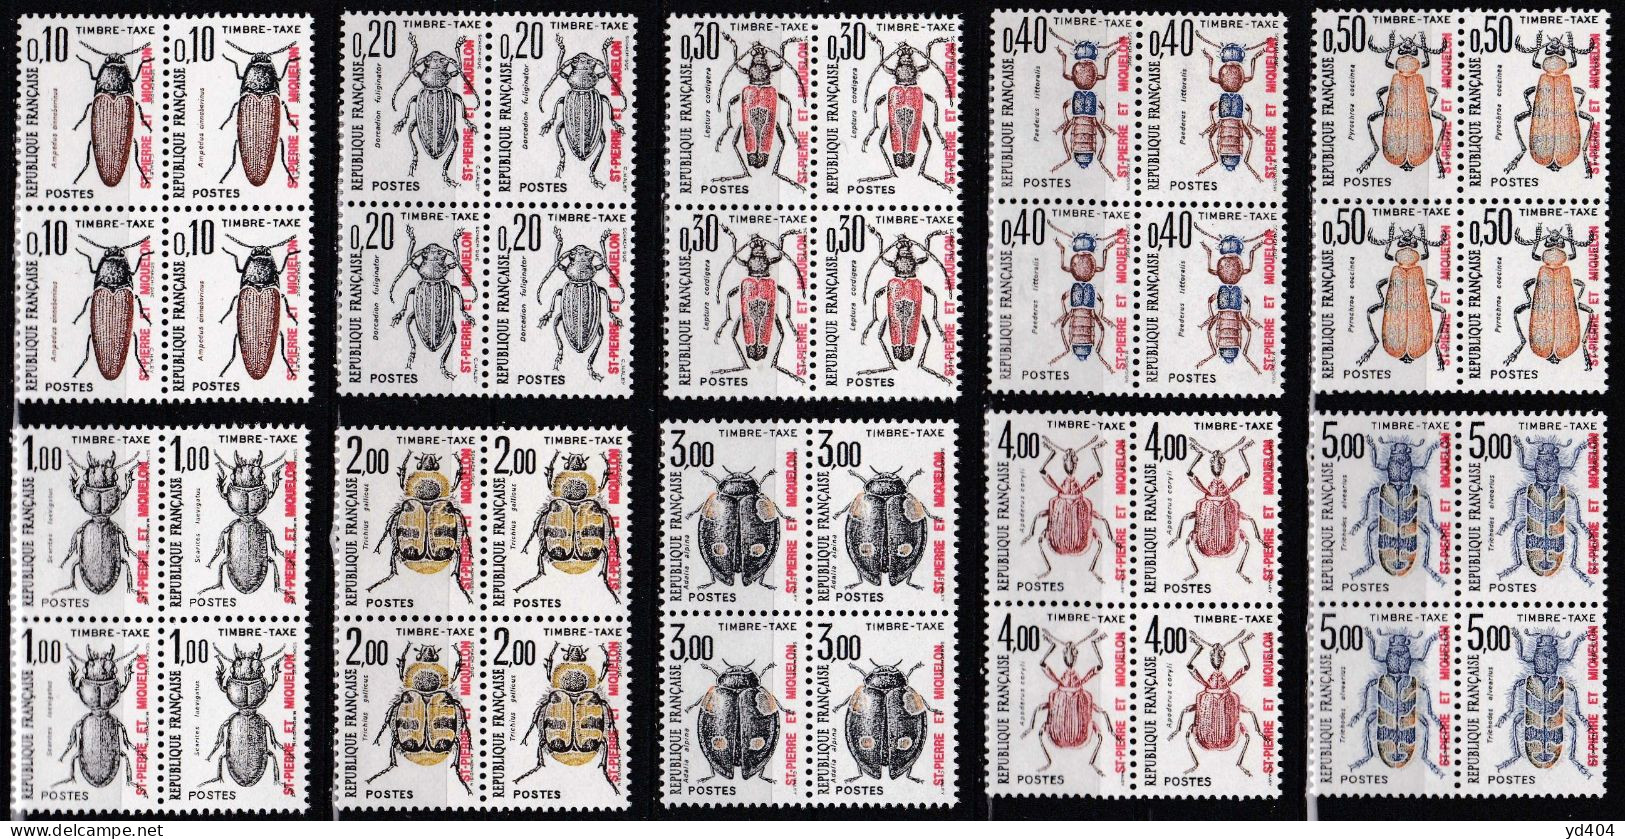 PM-660B – ST PIERRE & MIQUELON – POSTAGE DUE - 1986 – INSECTS – SG # D569/78(x4) MNH 106 € - Portomarken